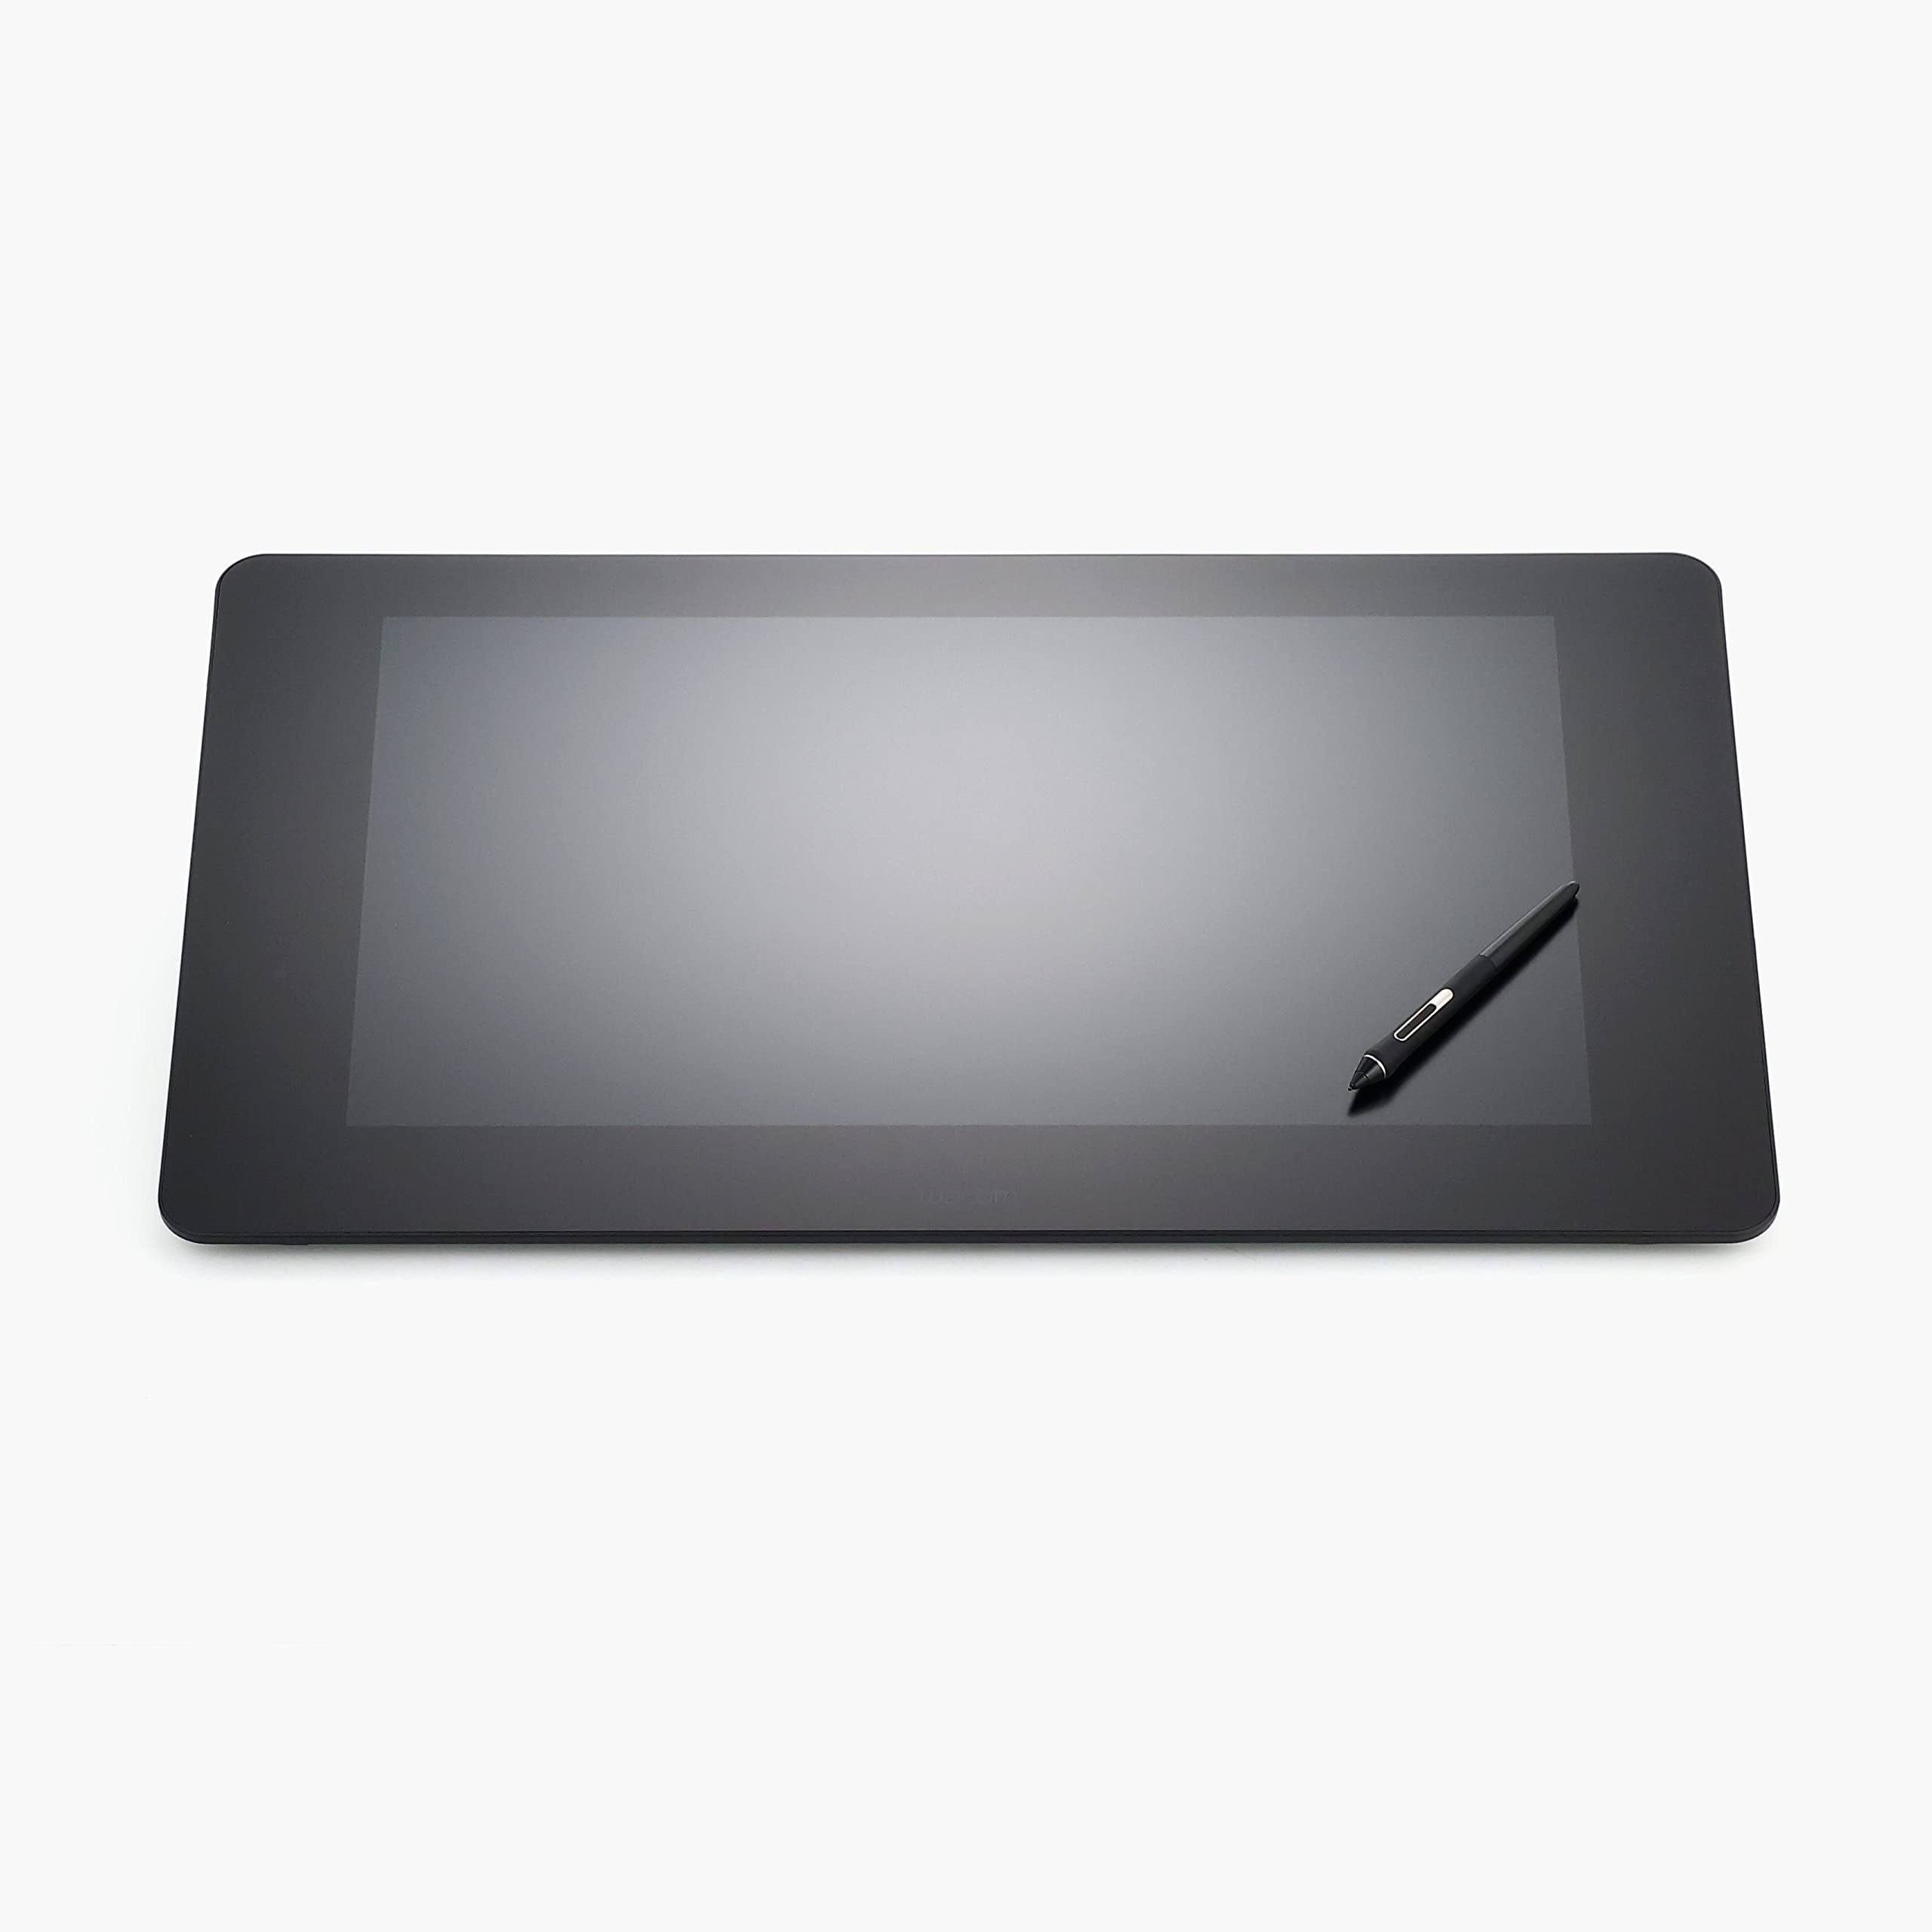 Mua Wacom Cintiq Pro 24 Liquid Tab TDTK-2420/K0 LCD Pen Tablet, 23.6